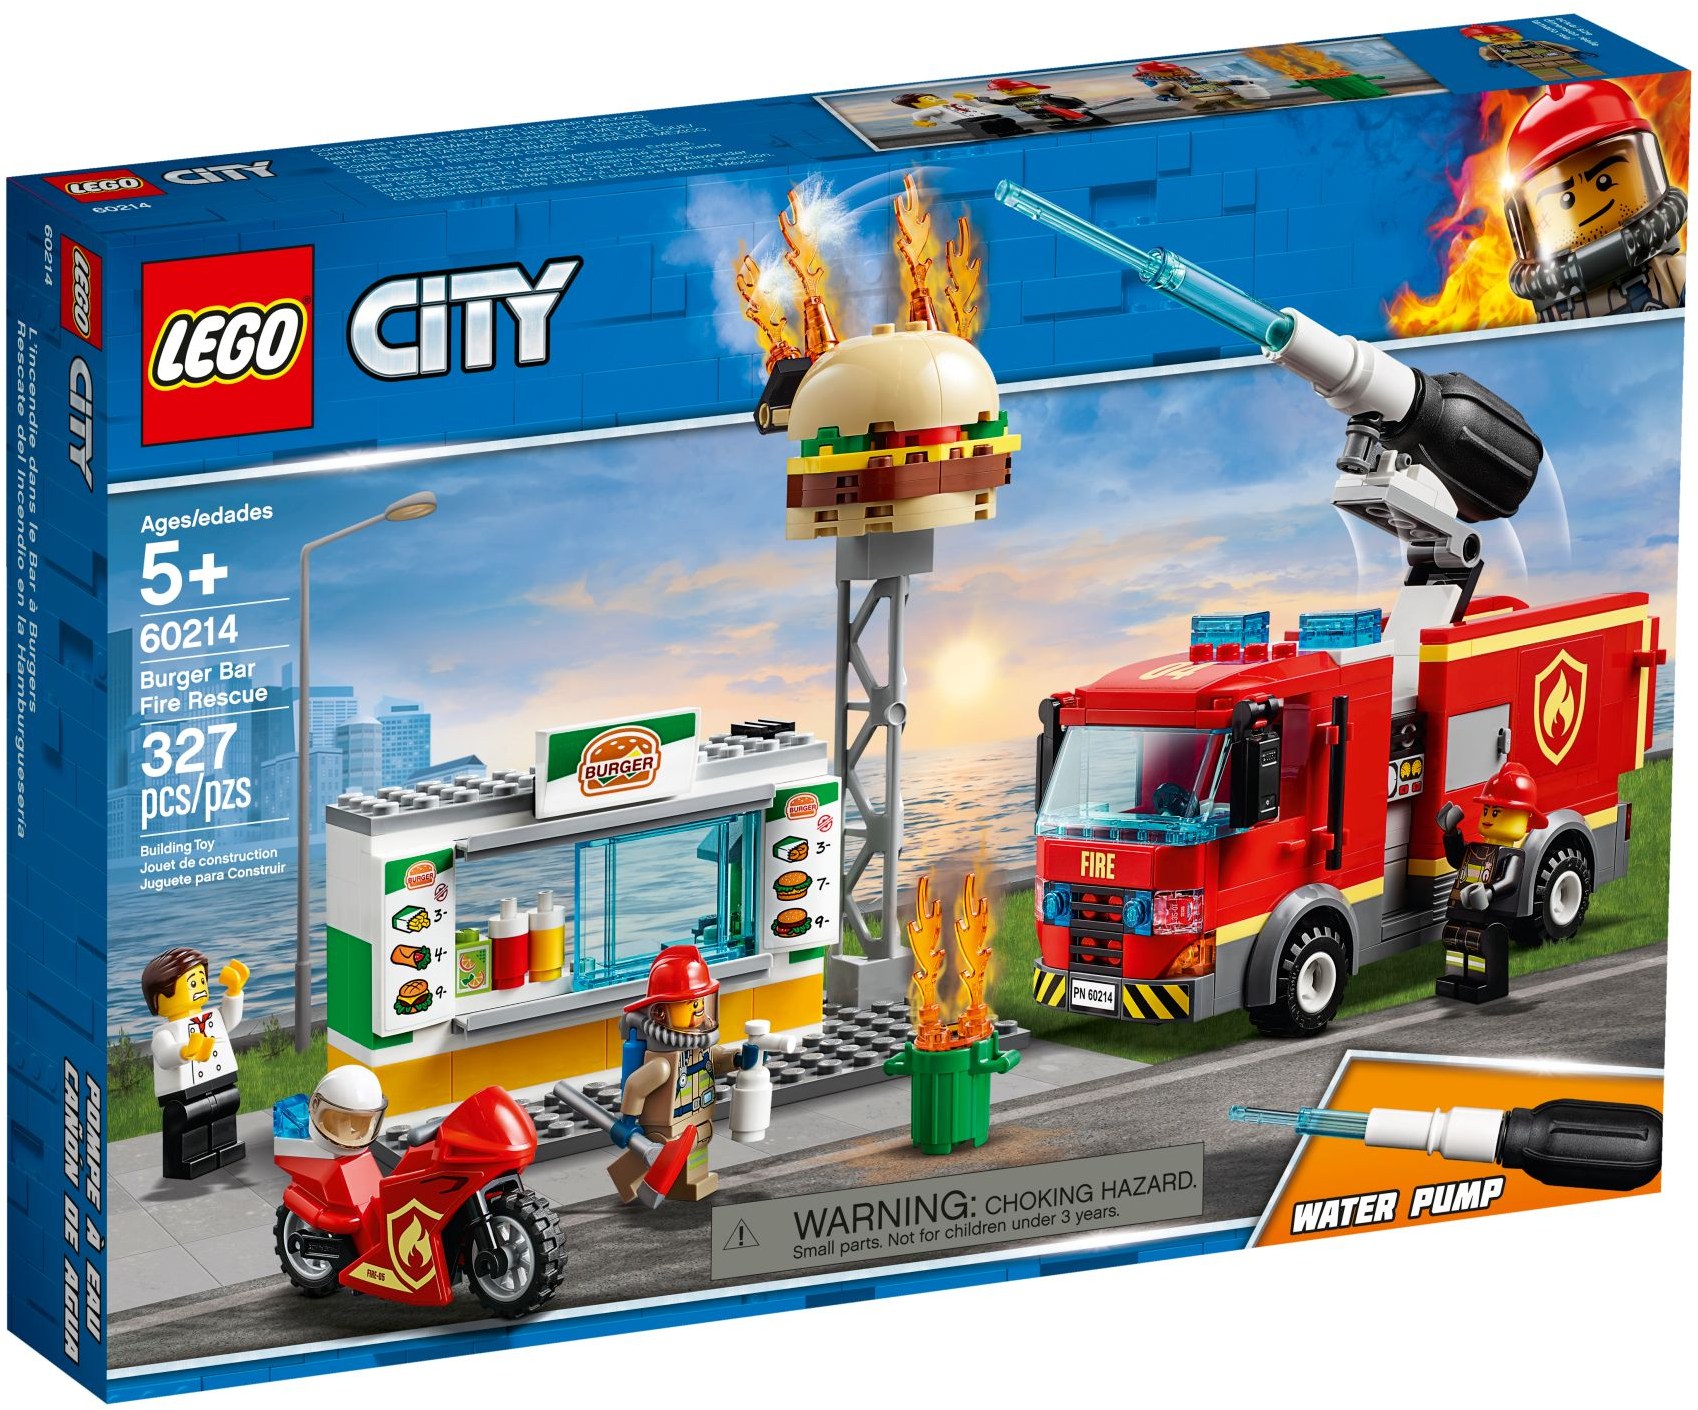 LEGO City 60393 pas cher, Sauvetage en tout-terrain des pompiers